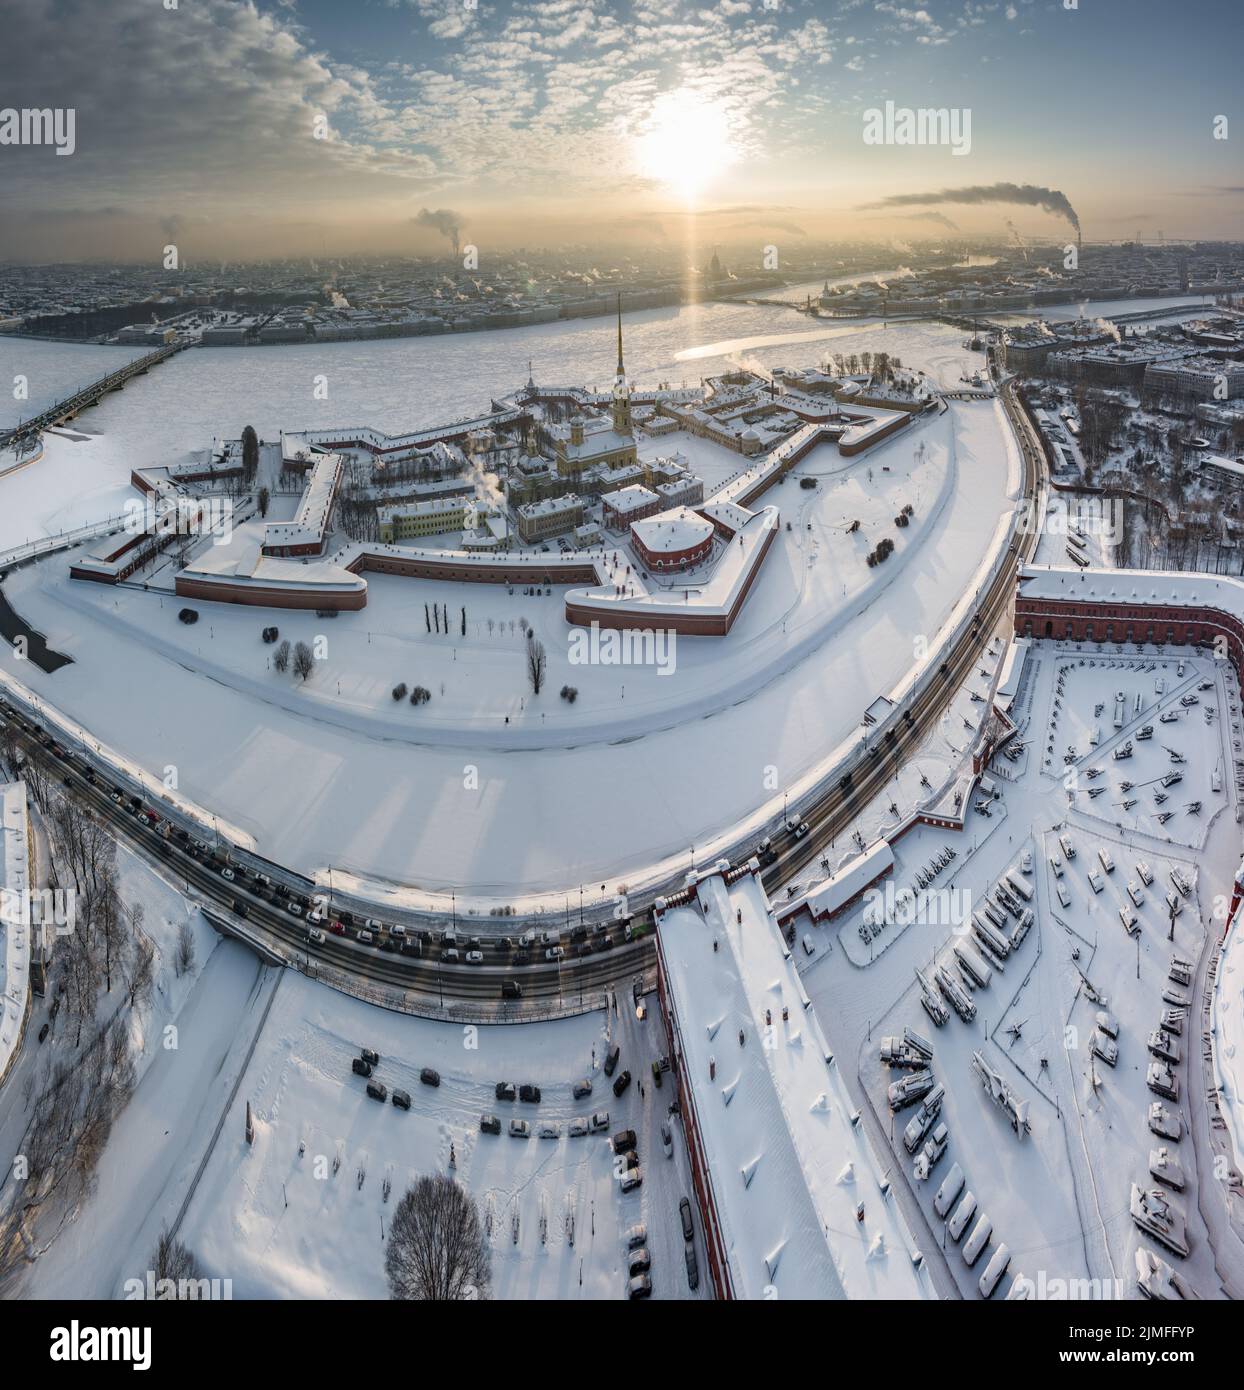 Punto de vista del invierno San Petersburgo al atardecer, río Neva congelado, vapor sobre la ciudad, fortaleza de Pedro y Pablo, tráfico de coches Foto de stock